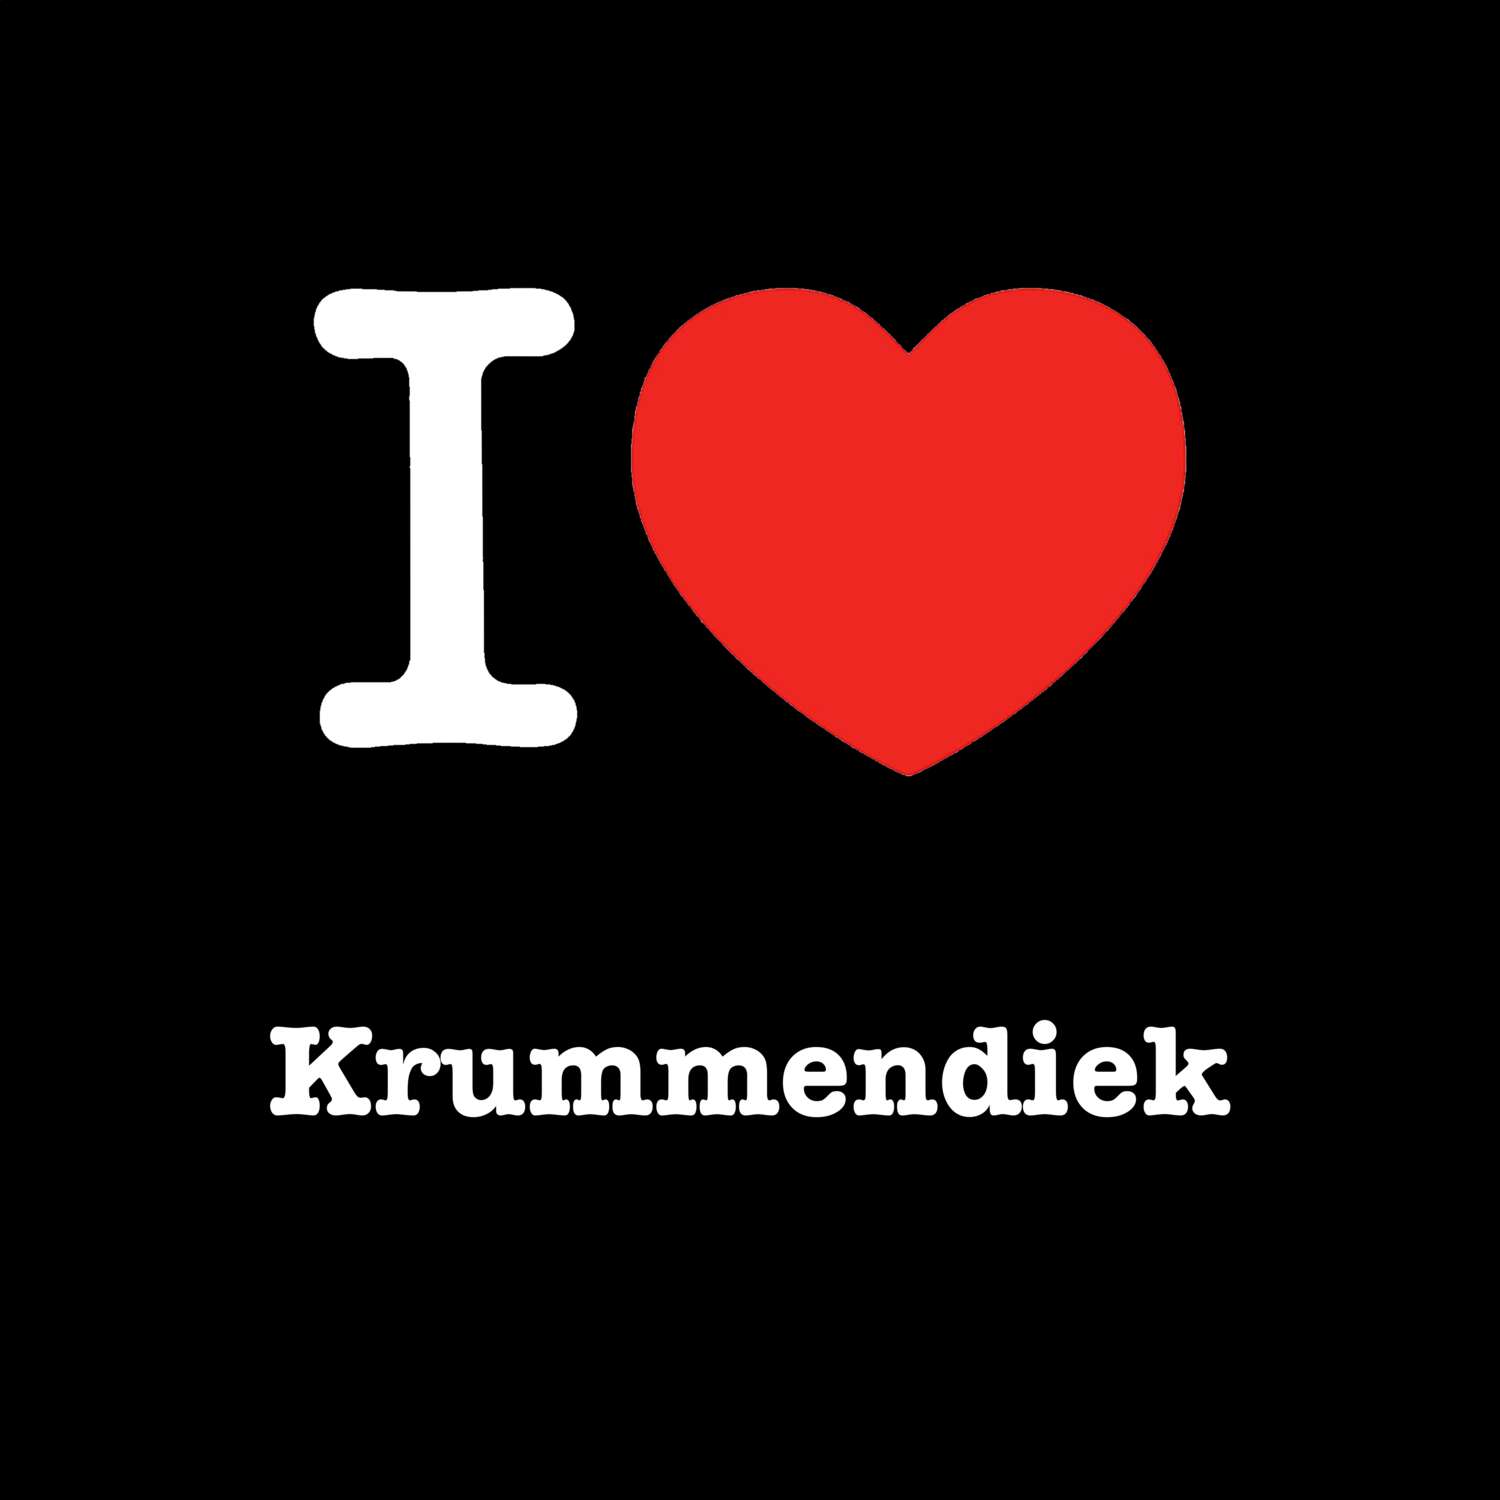 Krummendiek T-Shirt »I love«